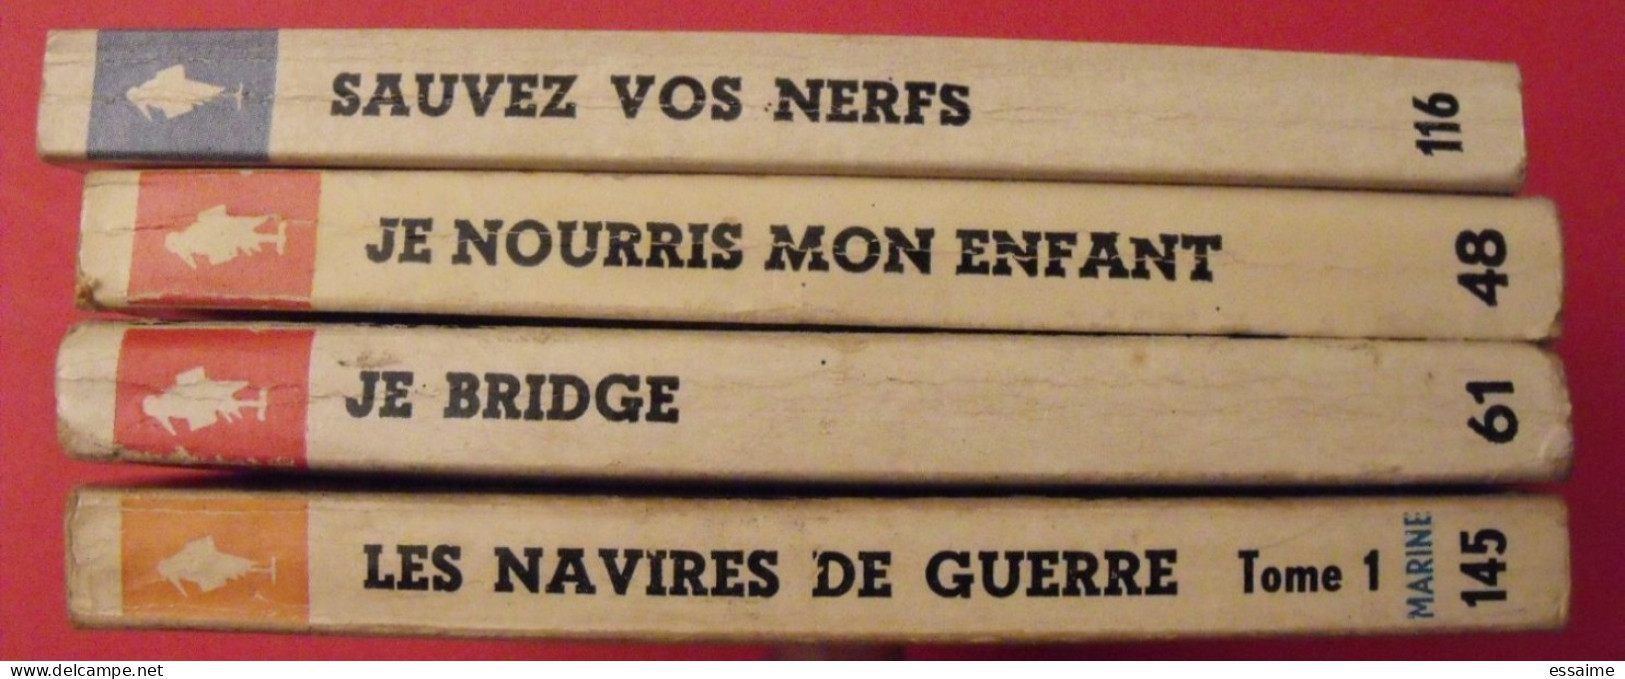 Lot De 4 Marabout Flash 1960-63. Navires De Guerre I Je Bridge Nourris Mon Enfant Sauvez Vos Nerfs - Lots De Plusieurs Livres